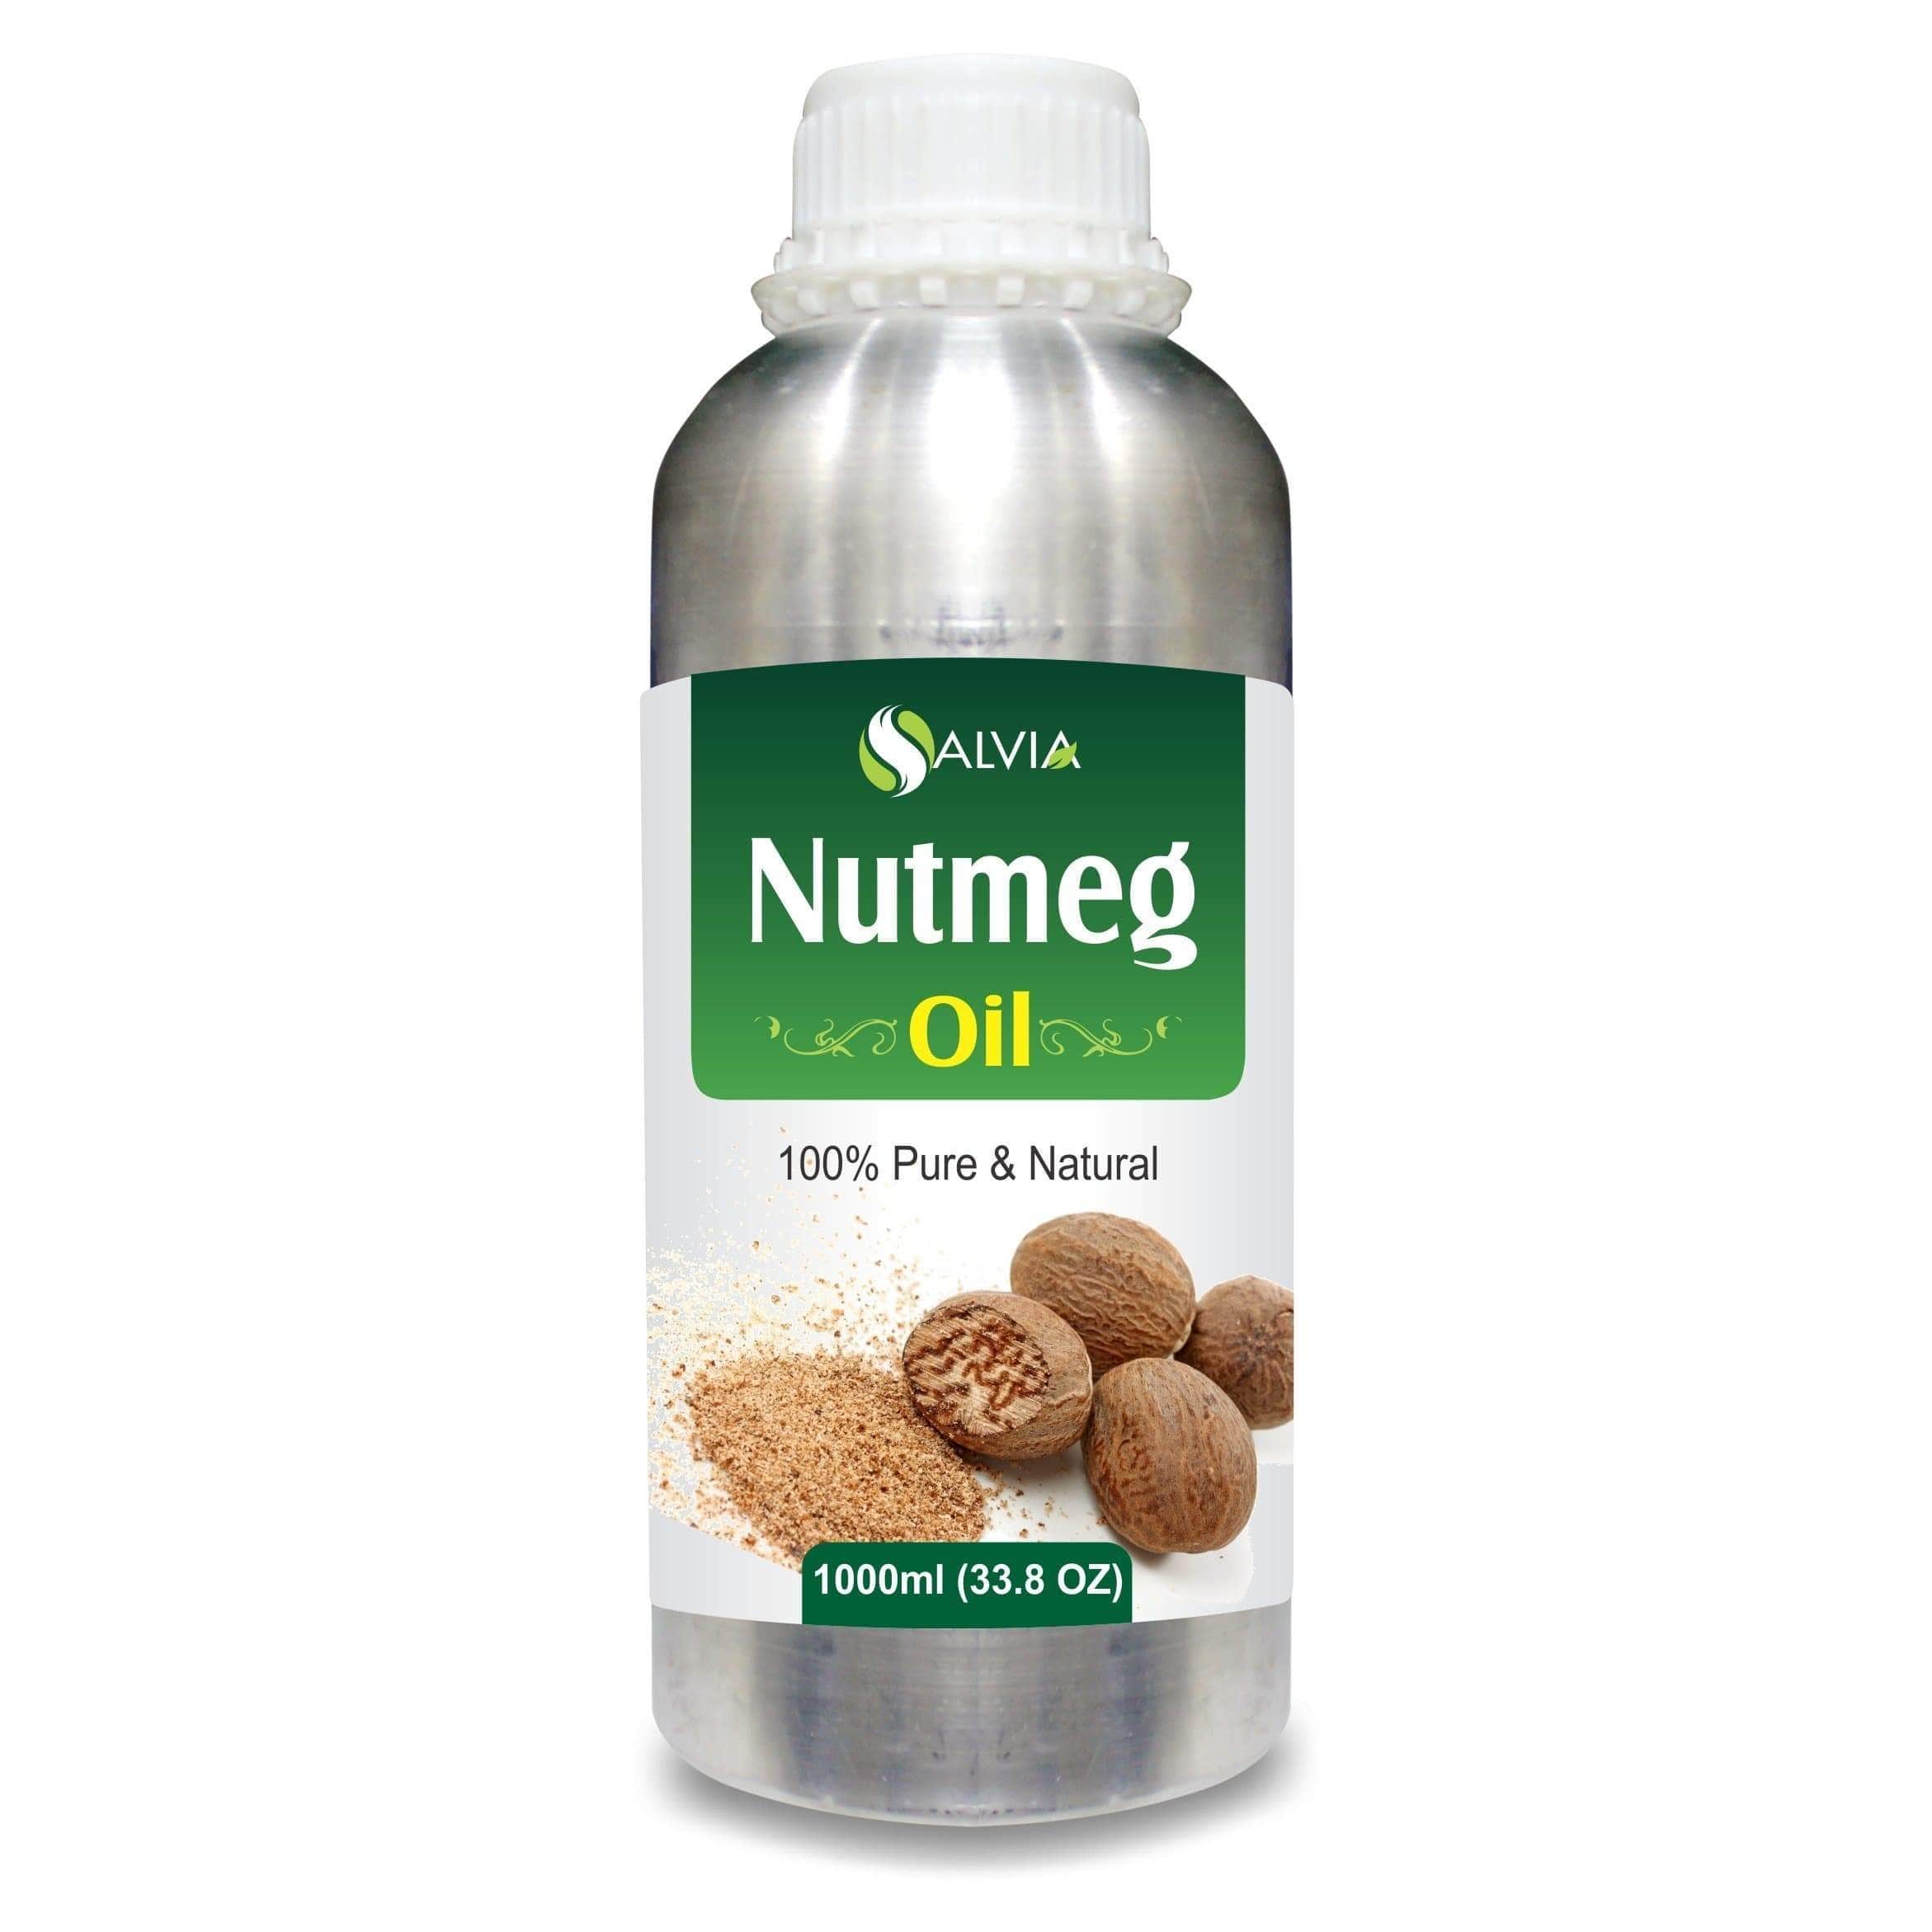 nutmeg oil uses for face